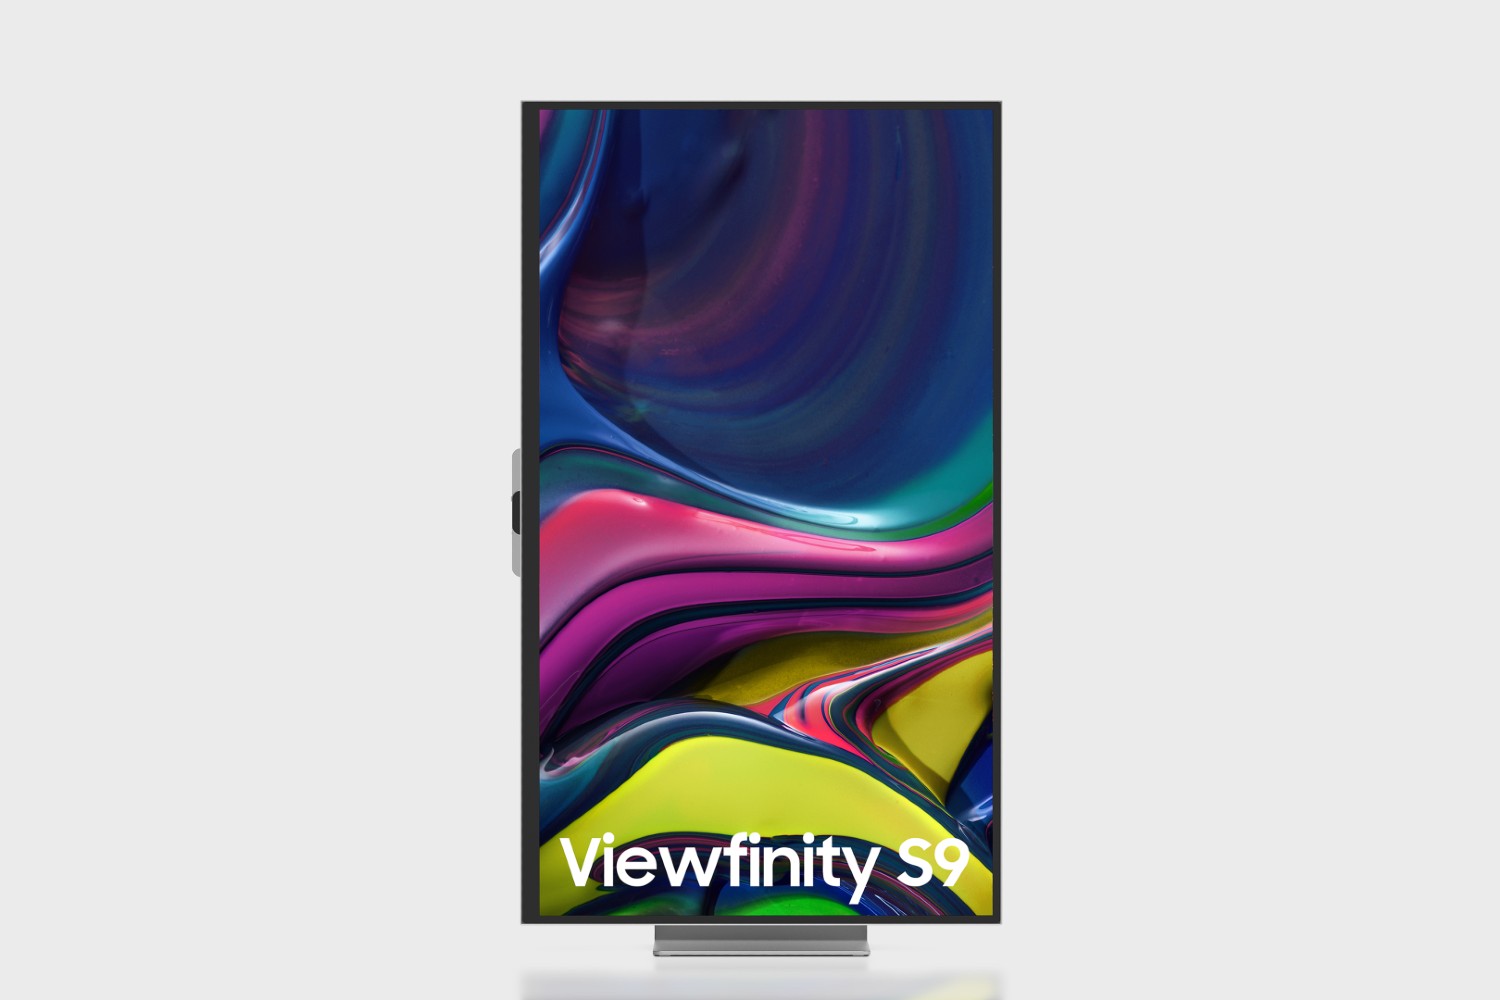 O Samsung Viewfinity S9 mudou para o modo retrato.